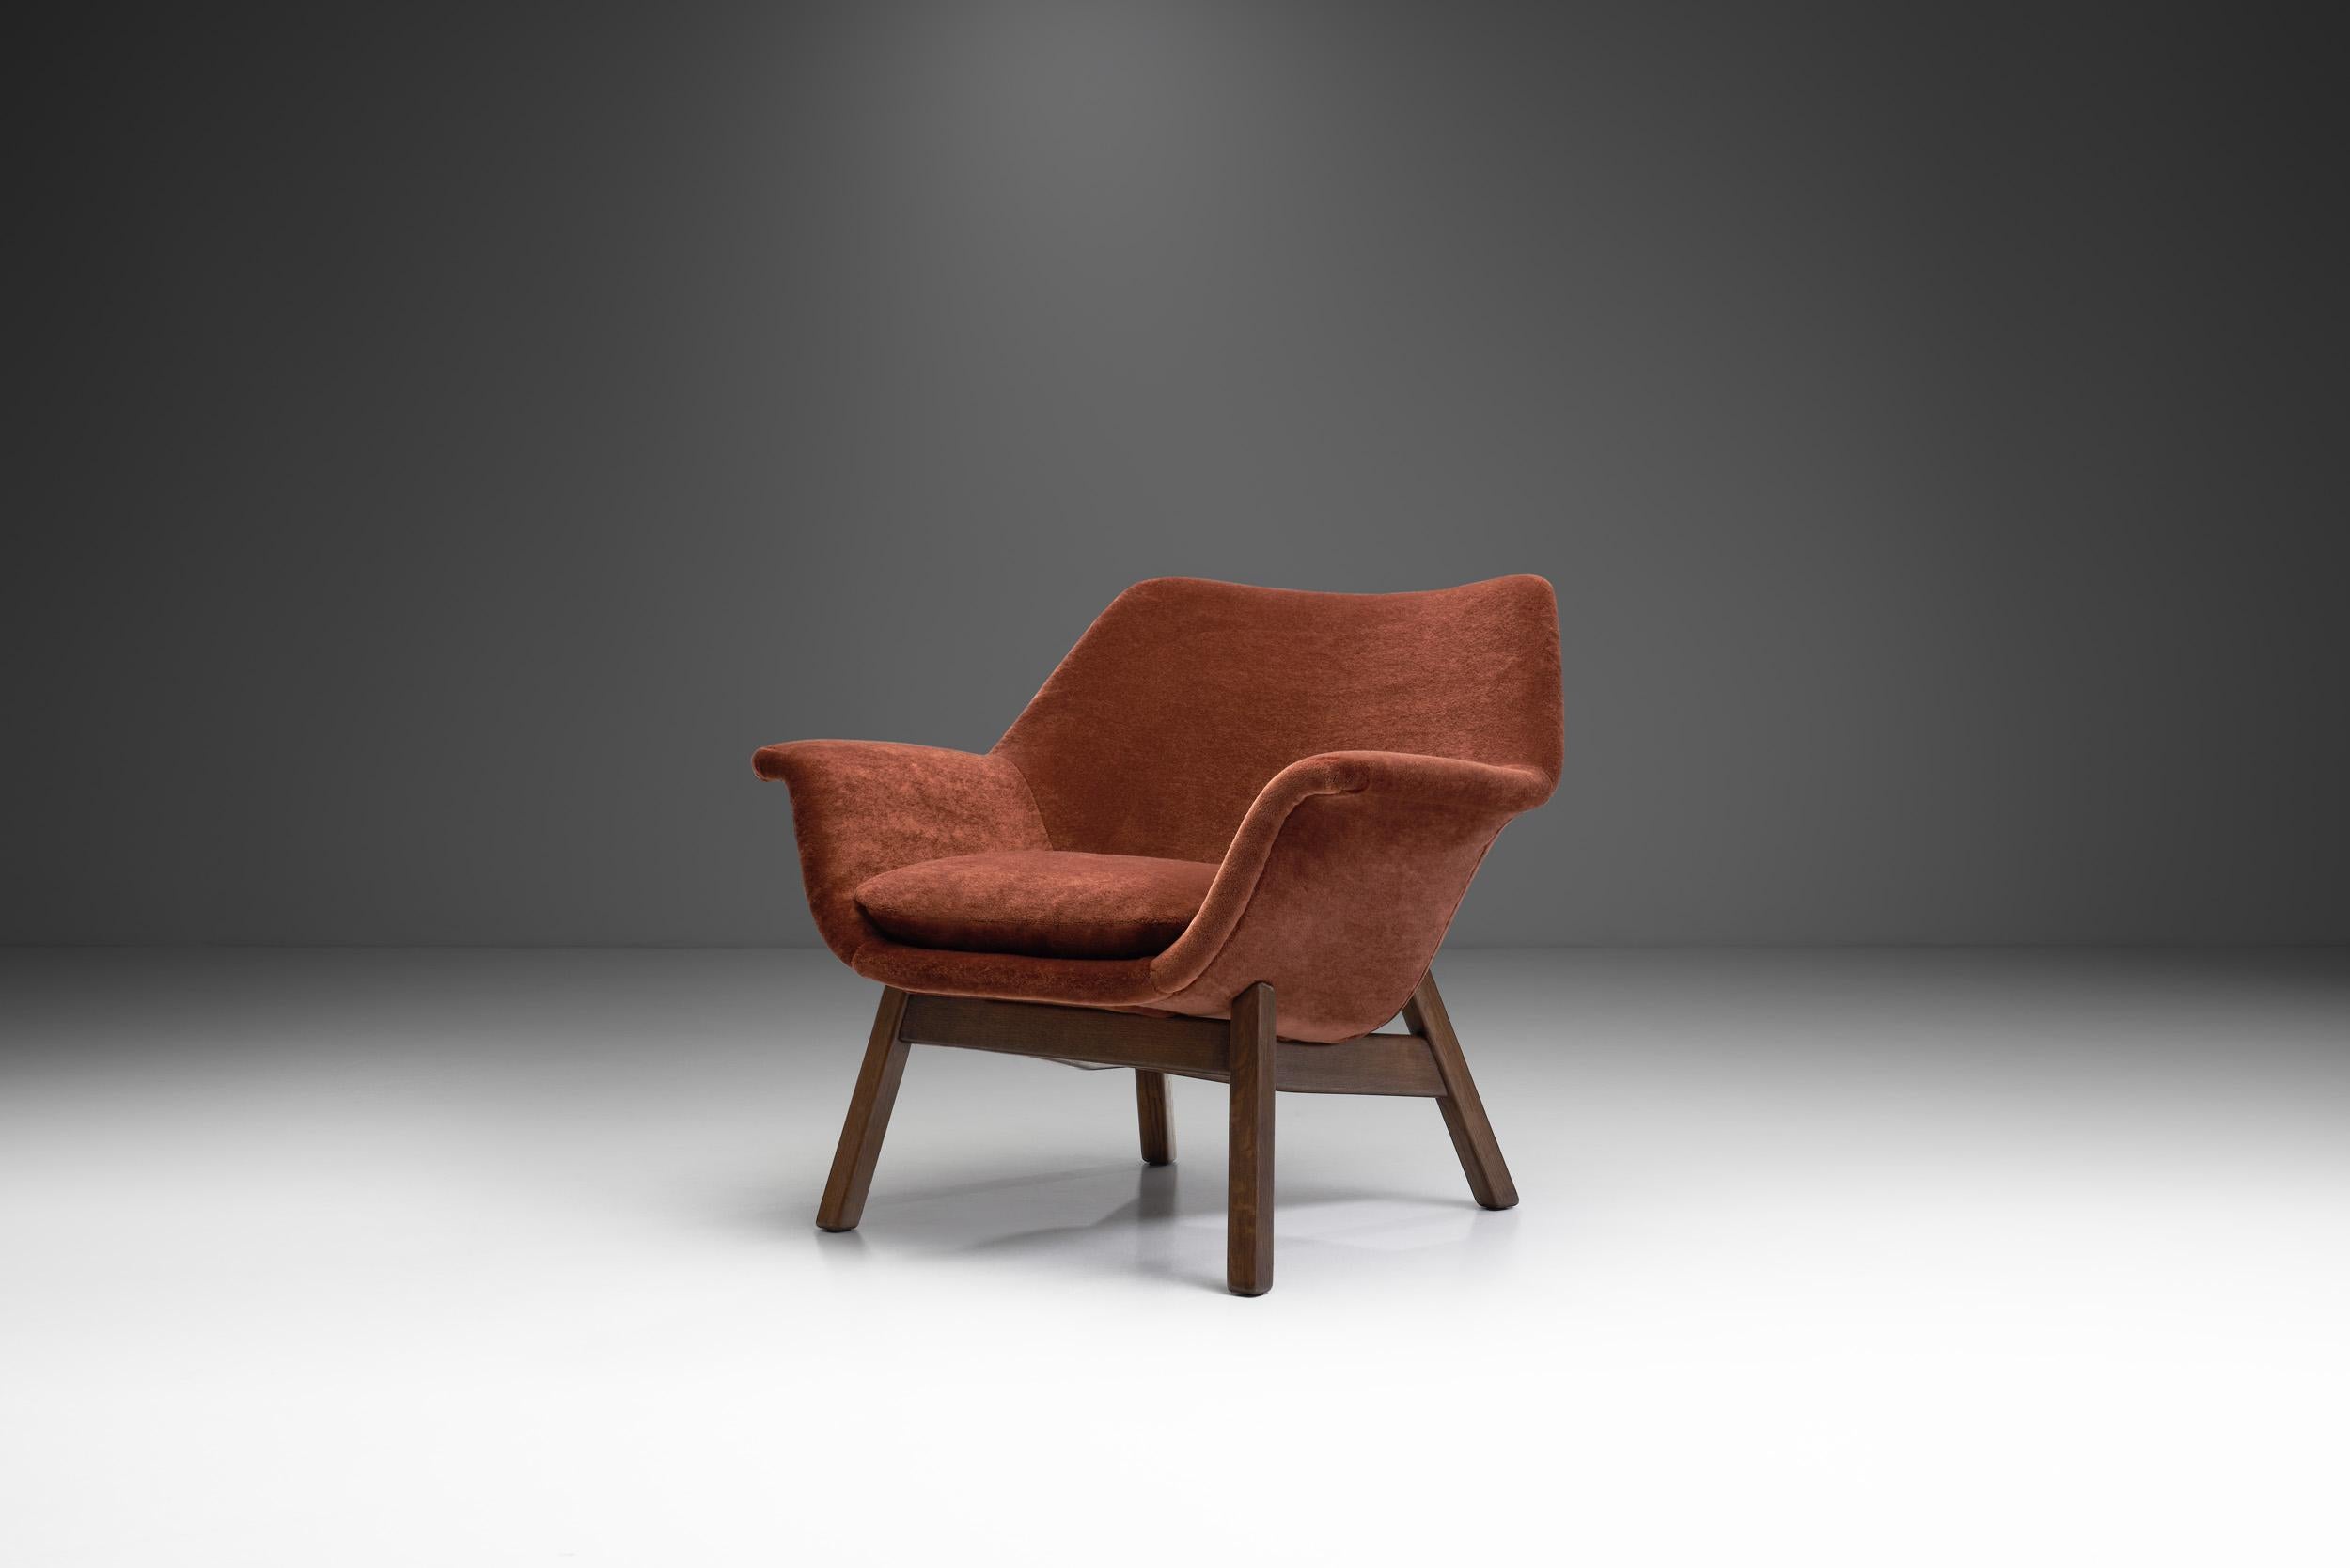 Dieser seltene Sessel aus Eiche zeigt die wohnliche Rundung, die das Design der 1950er Jahre in den nordischen Ländern prägte. Hiort af Ornäs entwickelte das Modell für seine eigene Möbelfirma, 